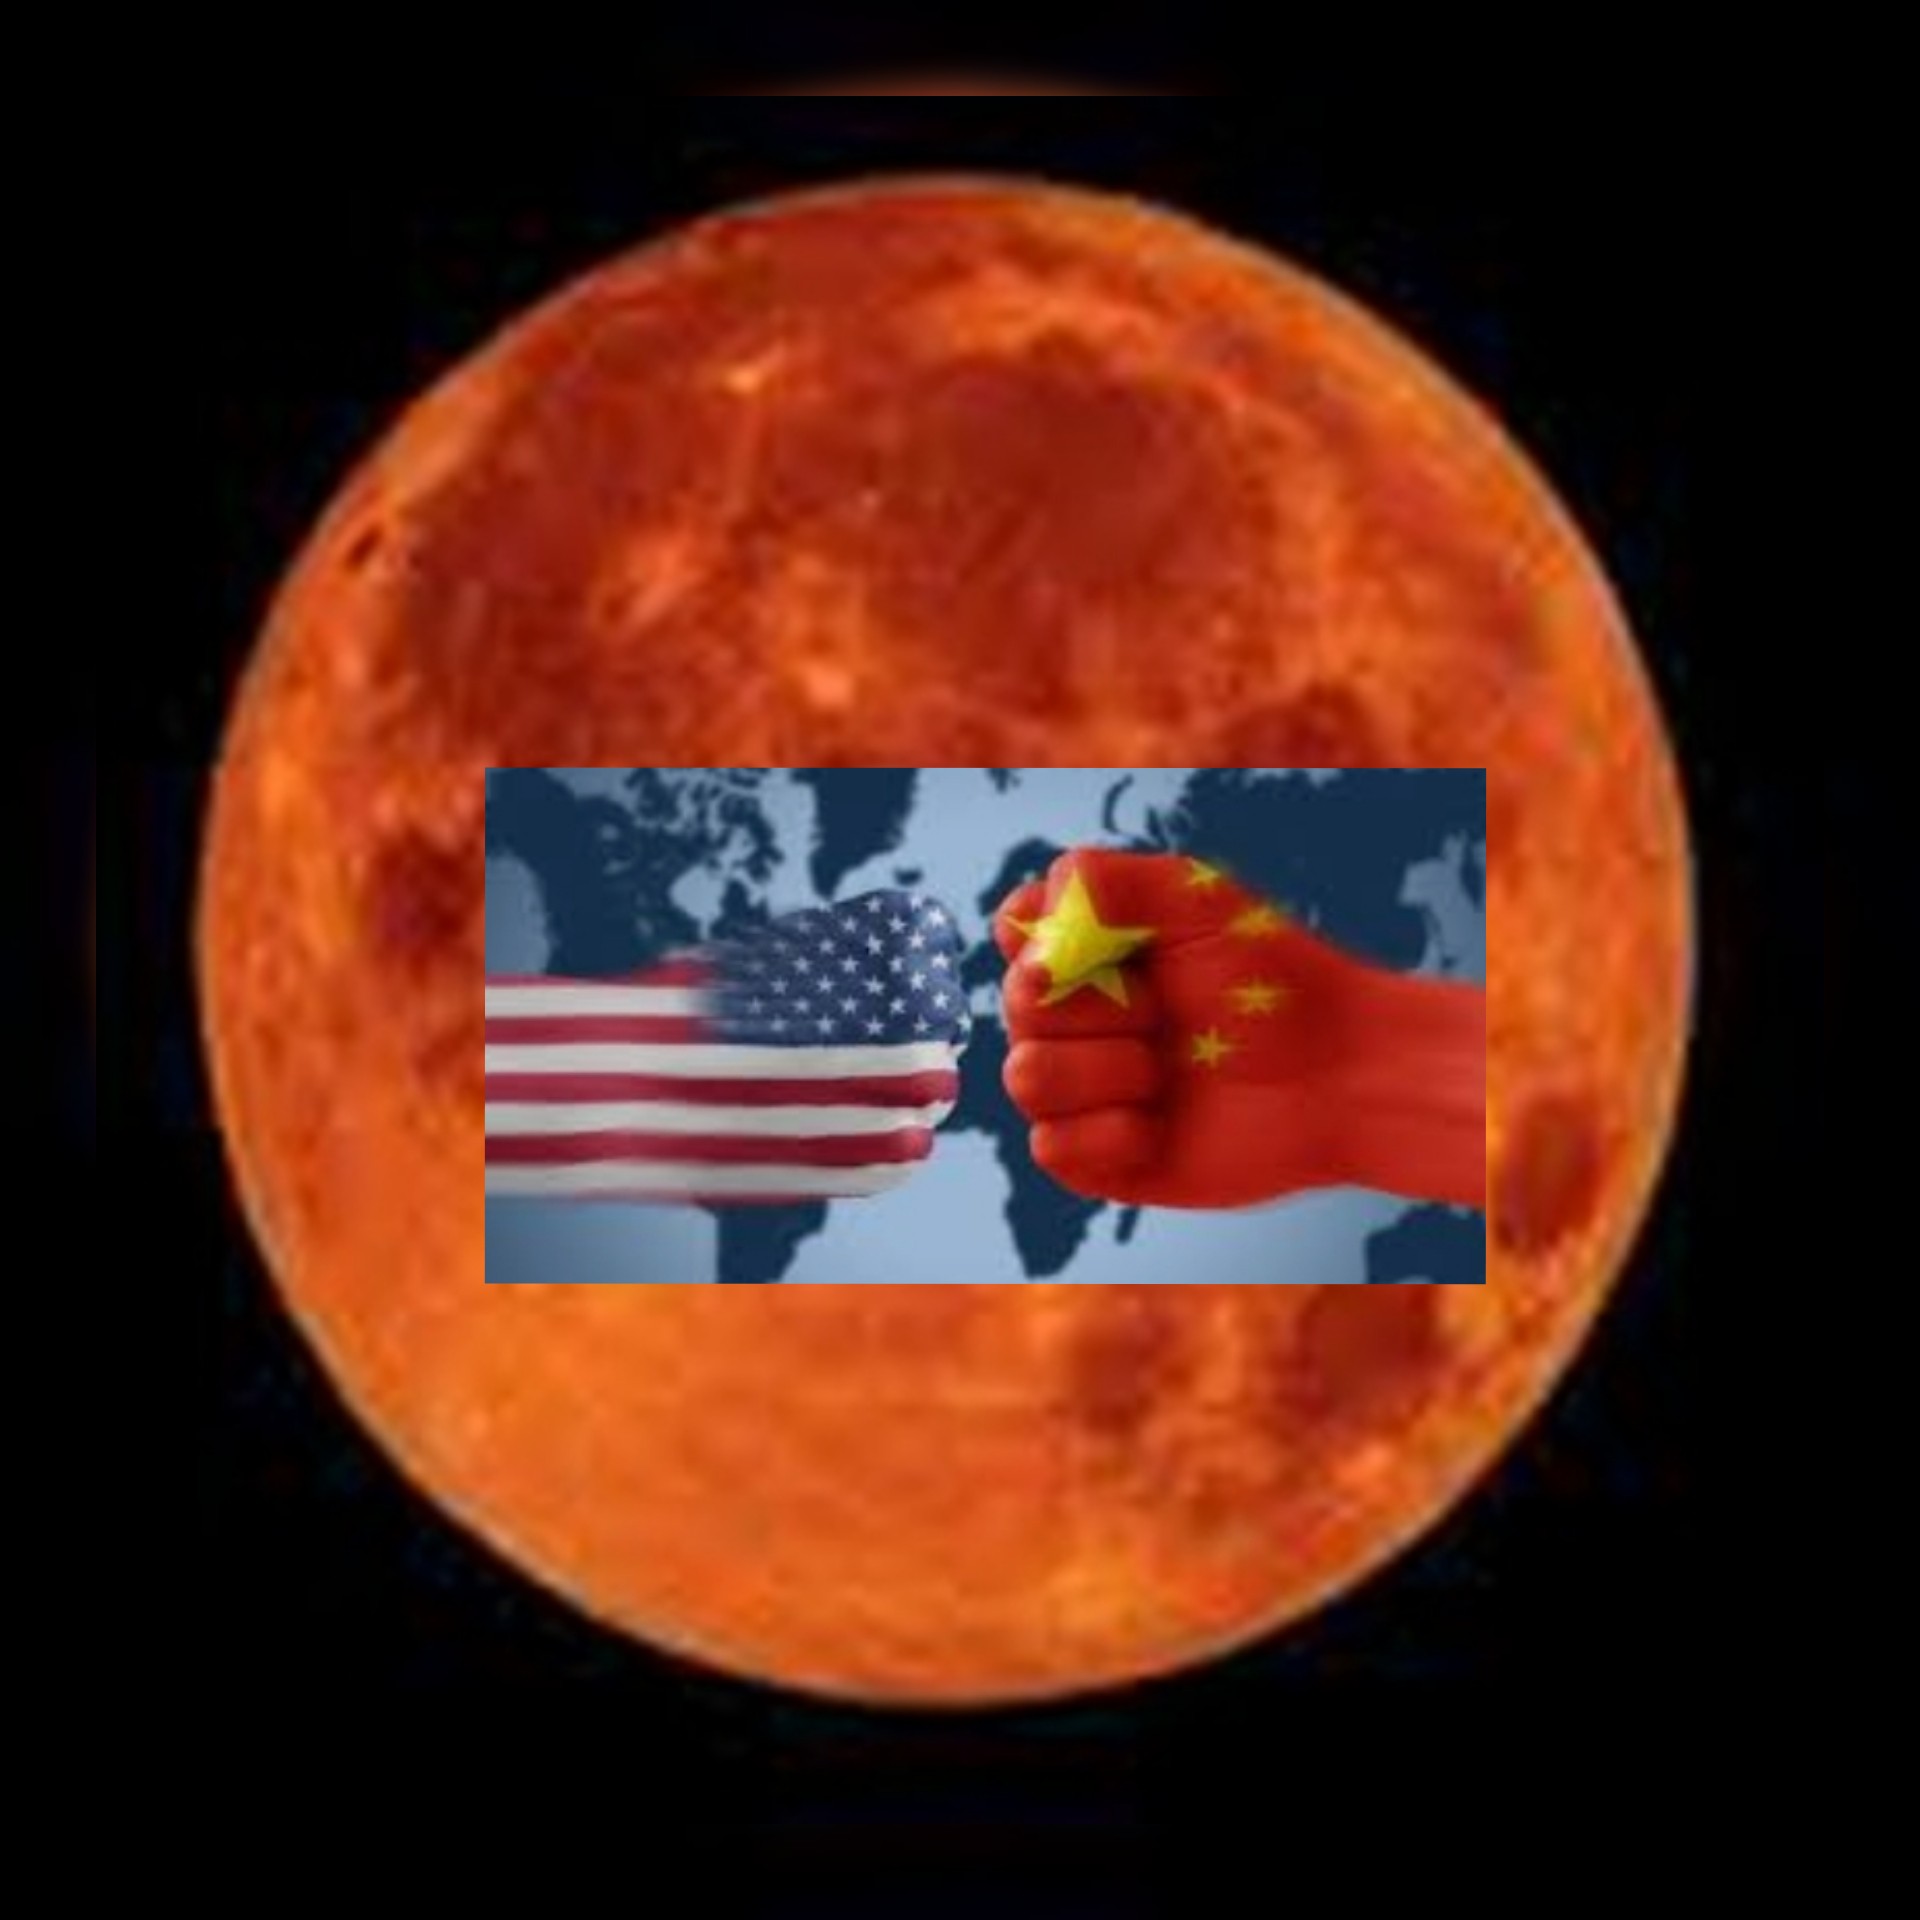 التنافس الصيني الأمريكي ينتقل الى المريخ .. الصين ثاني دولة بعد أمريكا تضع مركبة فضائية على سطح المريخ